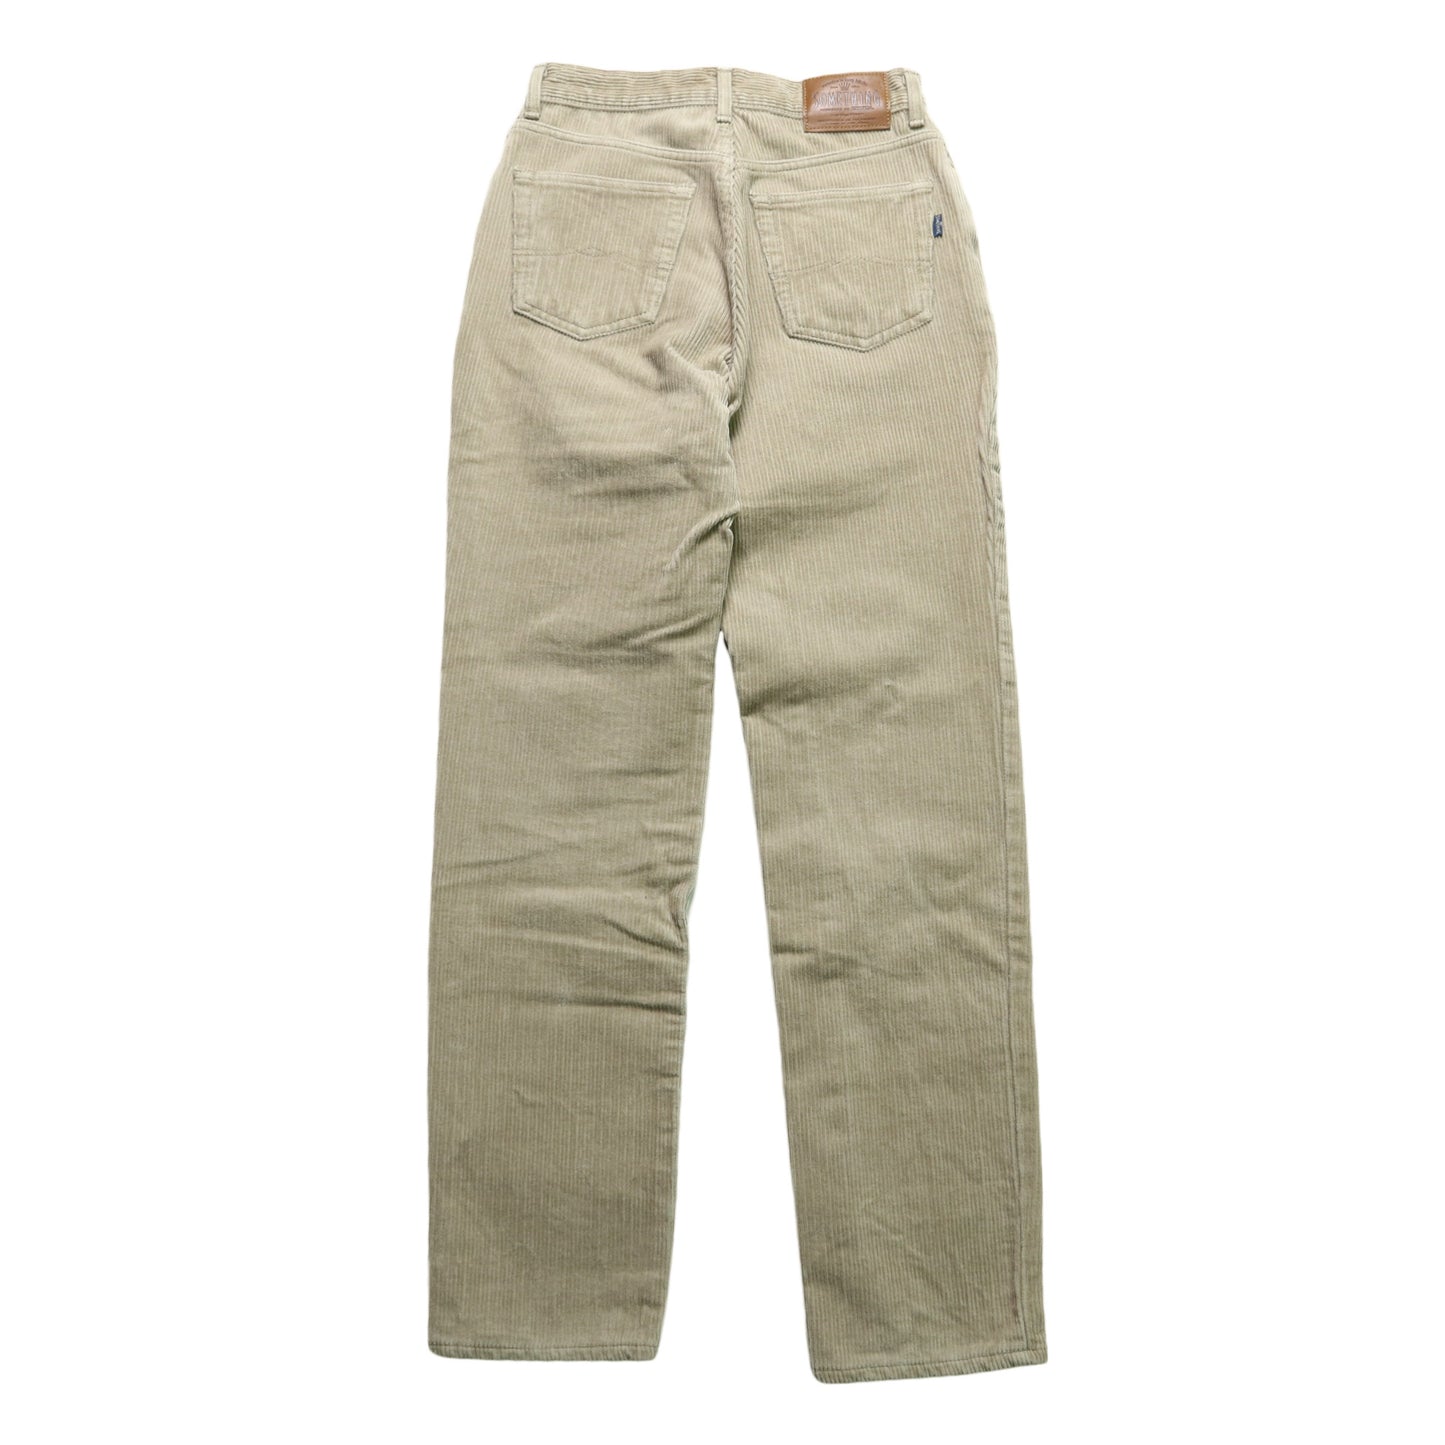 (26W) Something Japanese made khaki thick corduroy pants